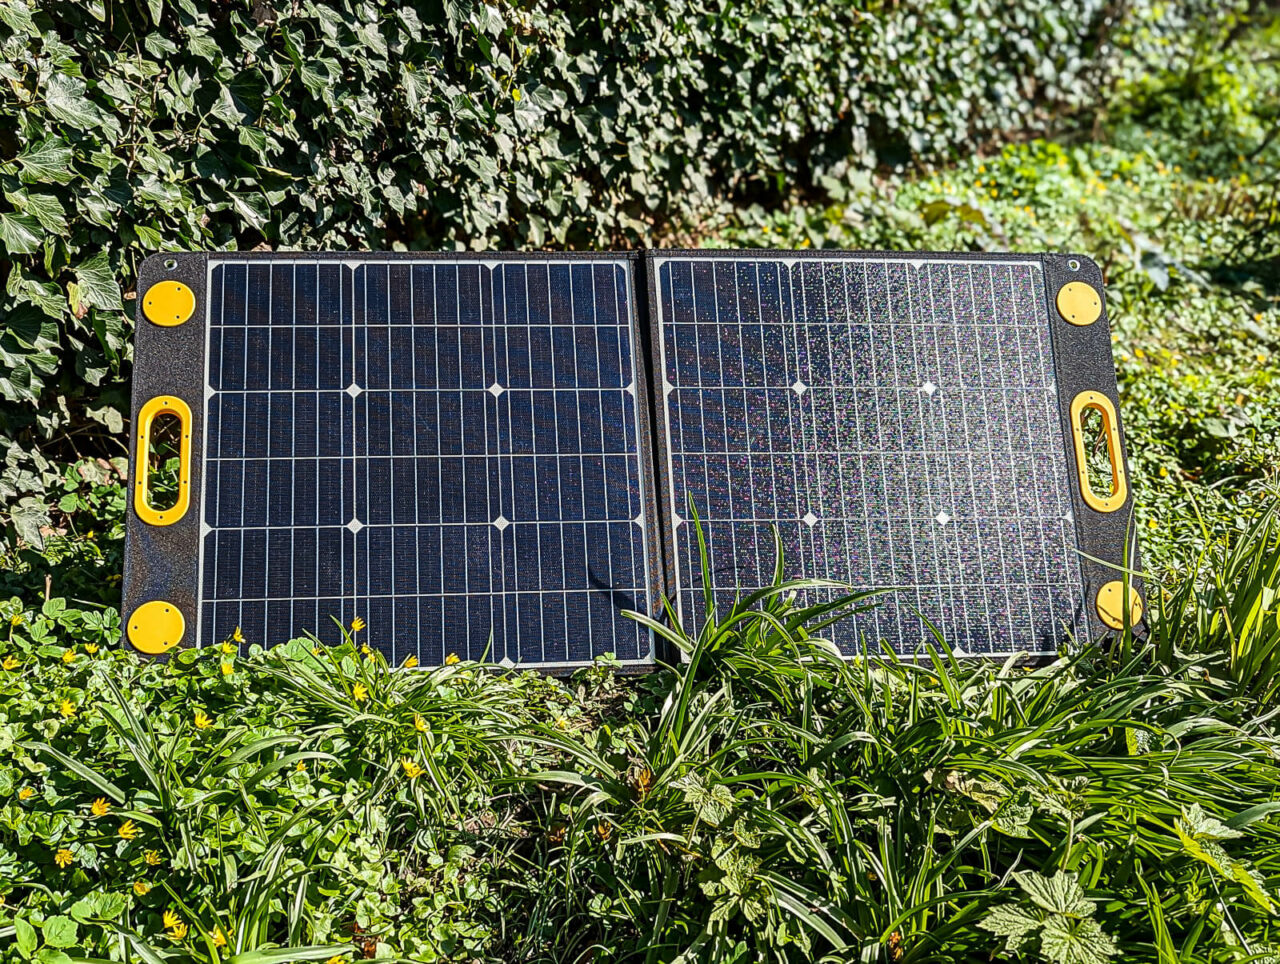 Togo Power 100W Advance Solar Panel - Test, aufgebaut, in der Sonne, frontal, Natur, Garten